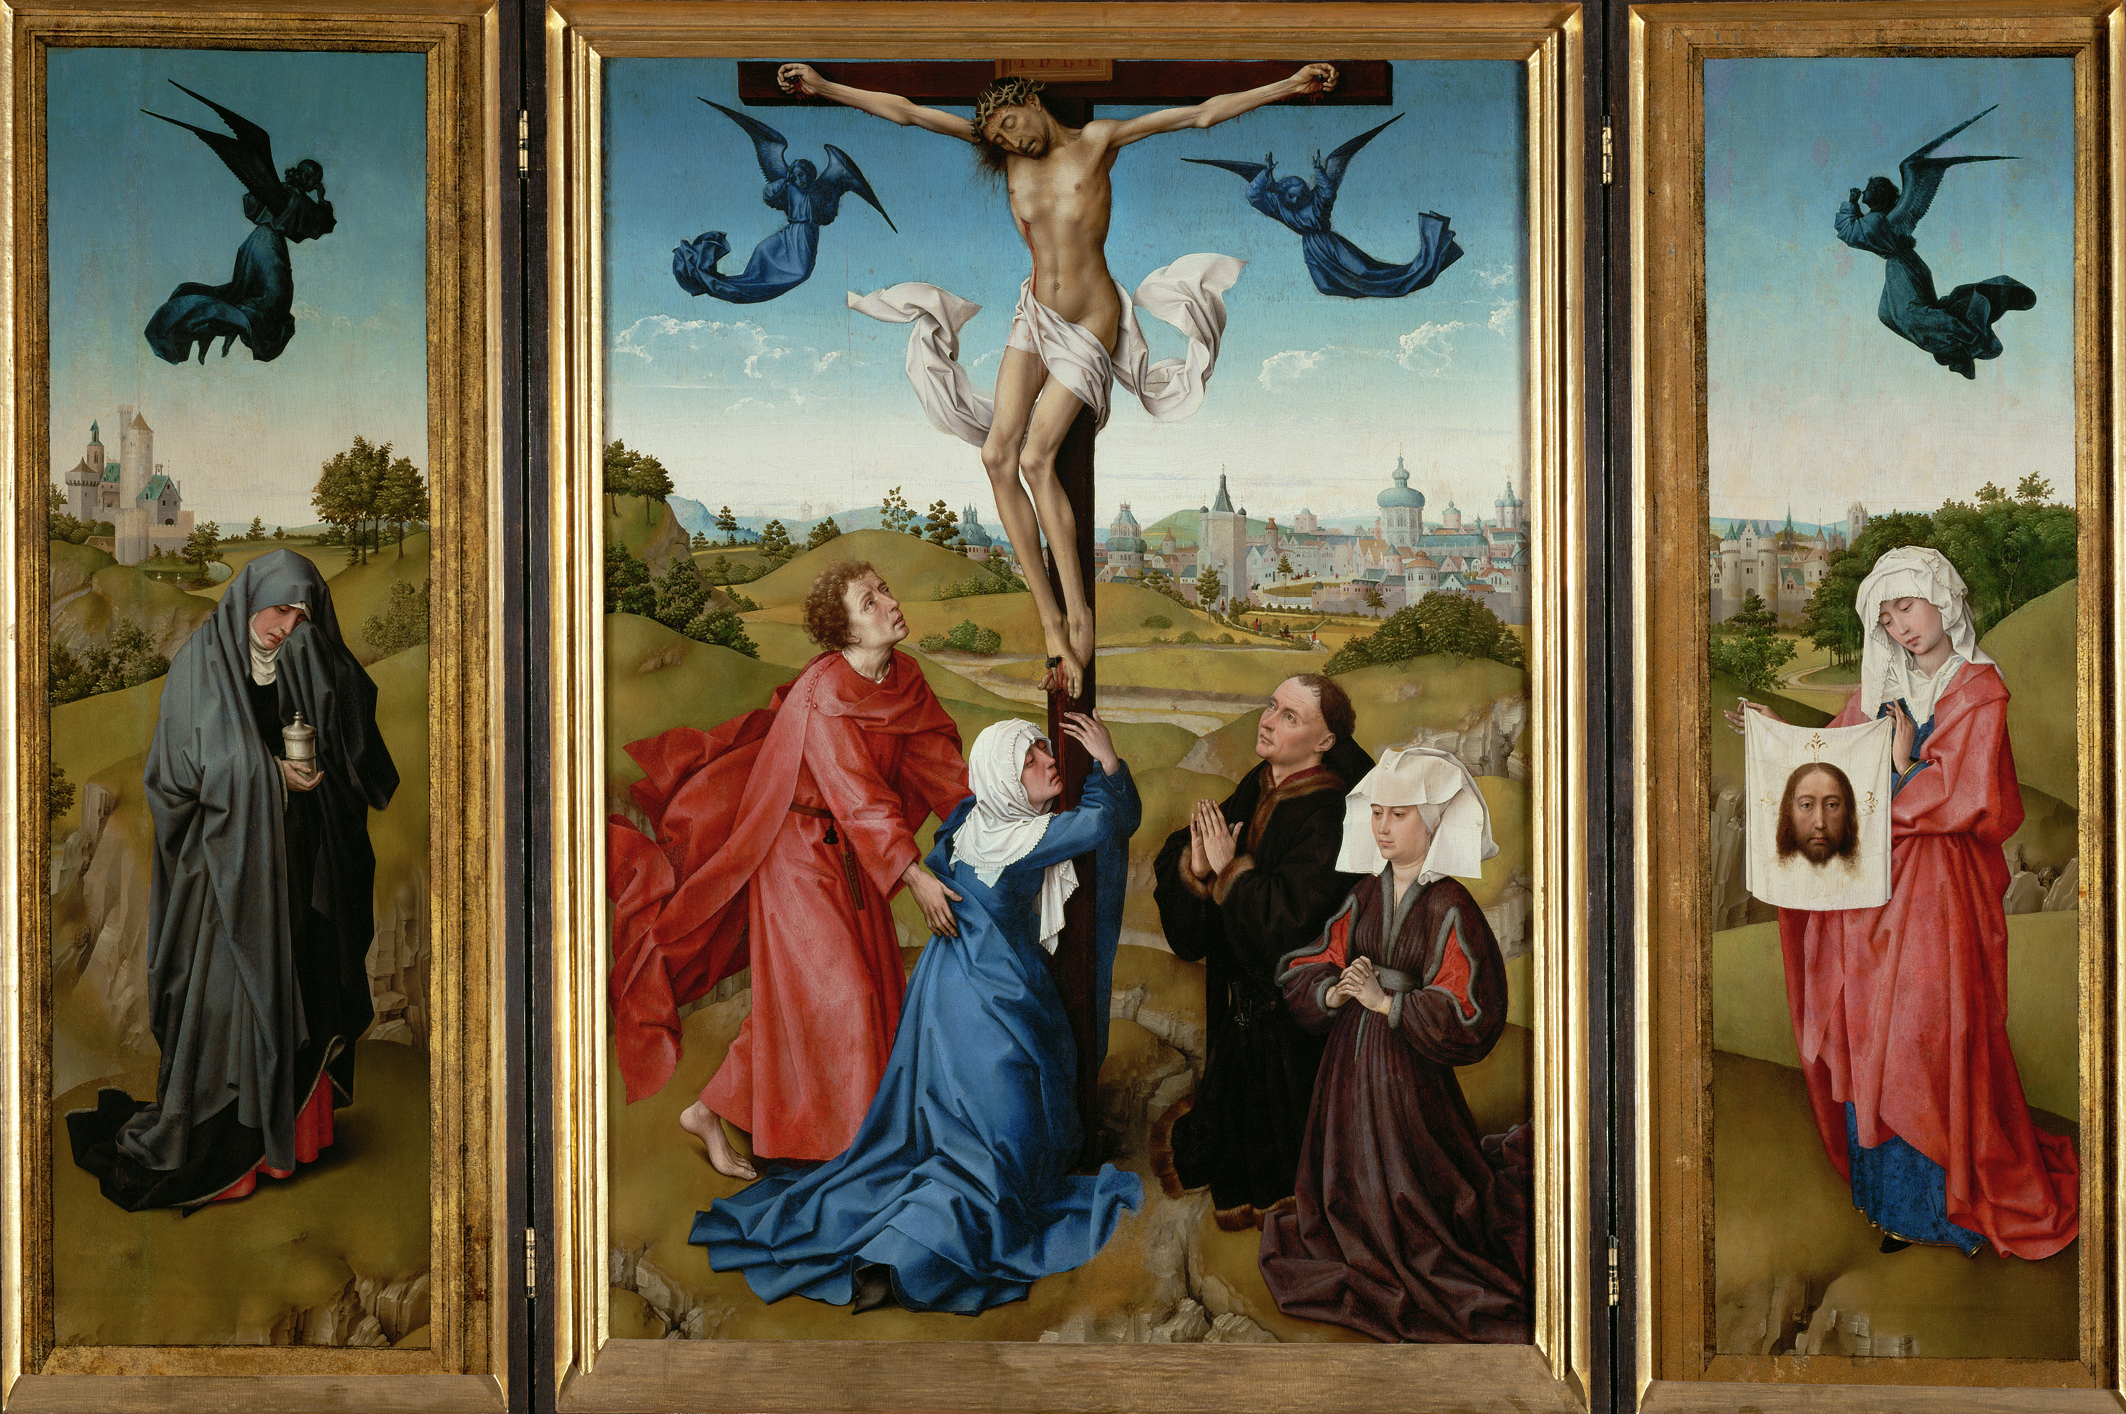 Kreuzigungstriptychon by Rogier van der Weyden - 1443/45 - Mitteltafel: 96 x 69 cm, Seitenflügel: je 101 x 35 cm  Kunsthistorisches Museum